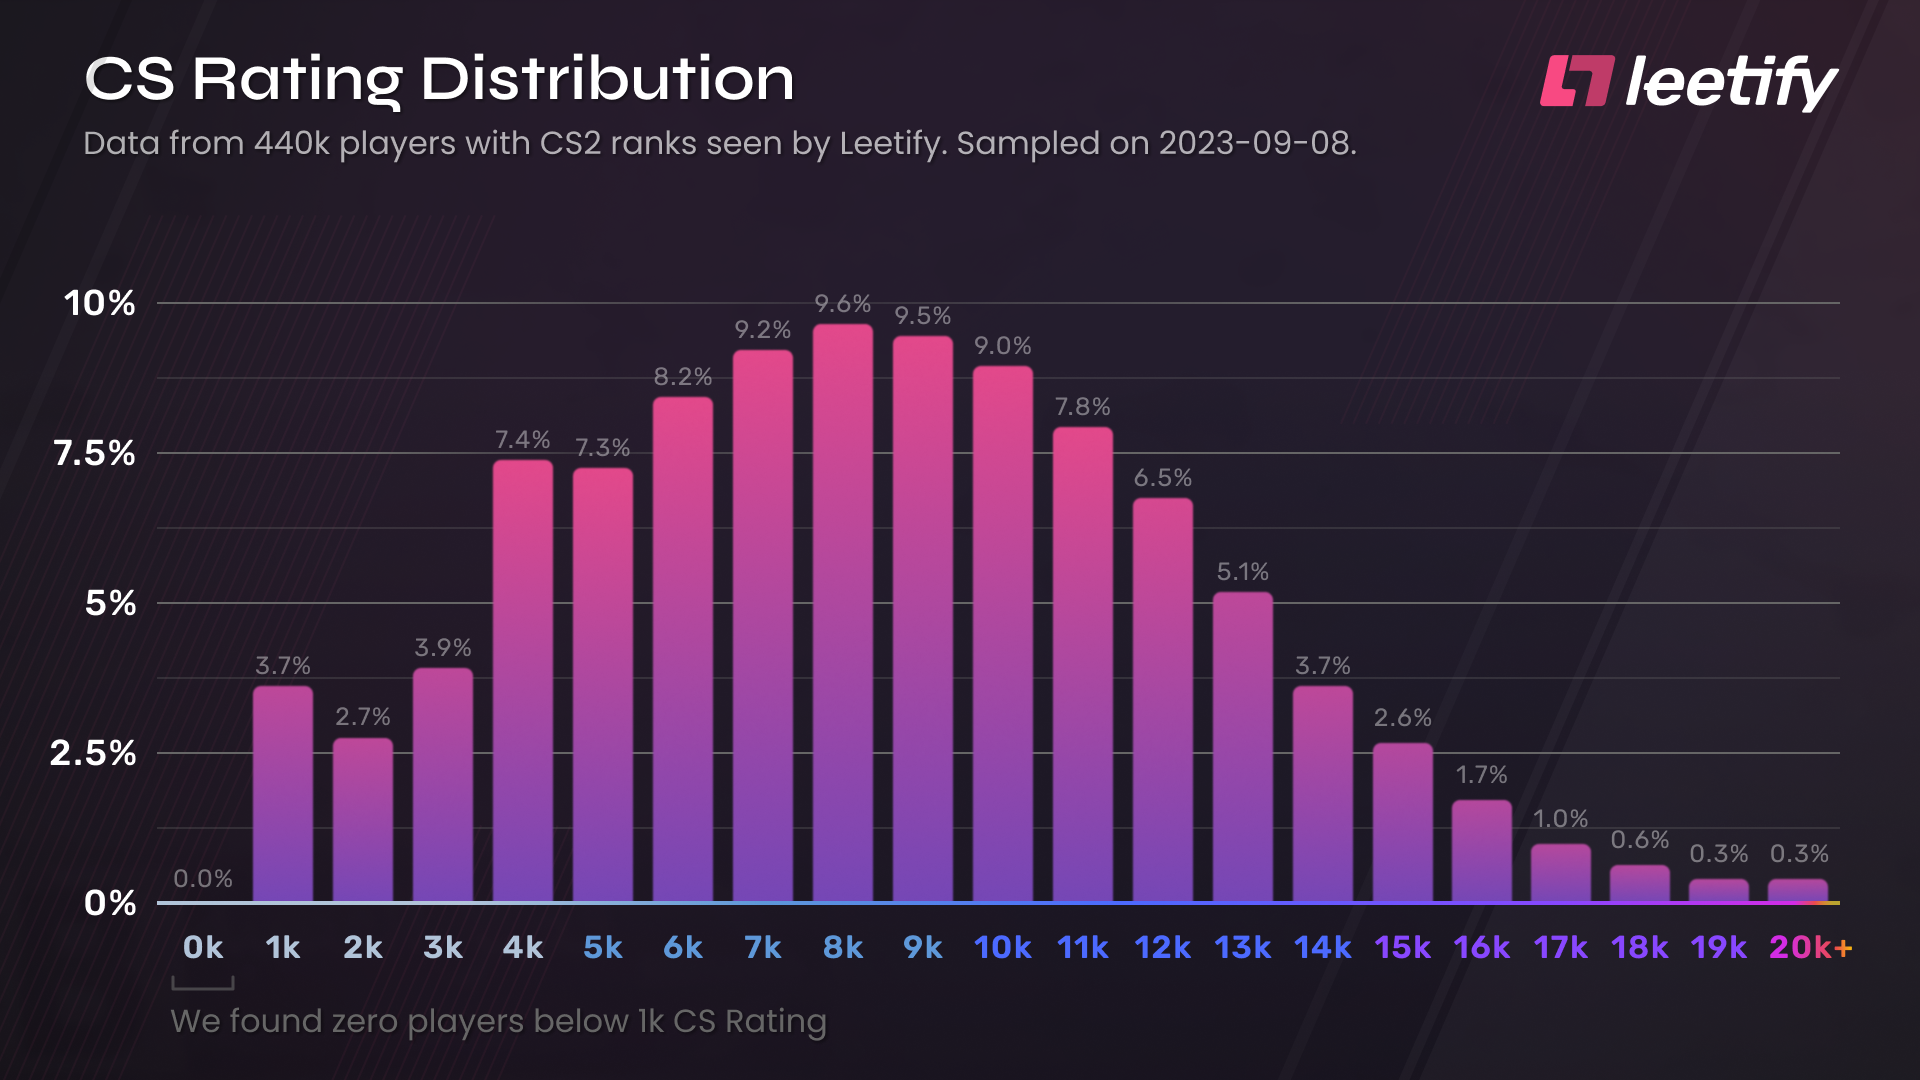 Ränge-Verteilung der 440'000 Datensätze auf Leetify zur CS2 Rating-Distribution